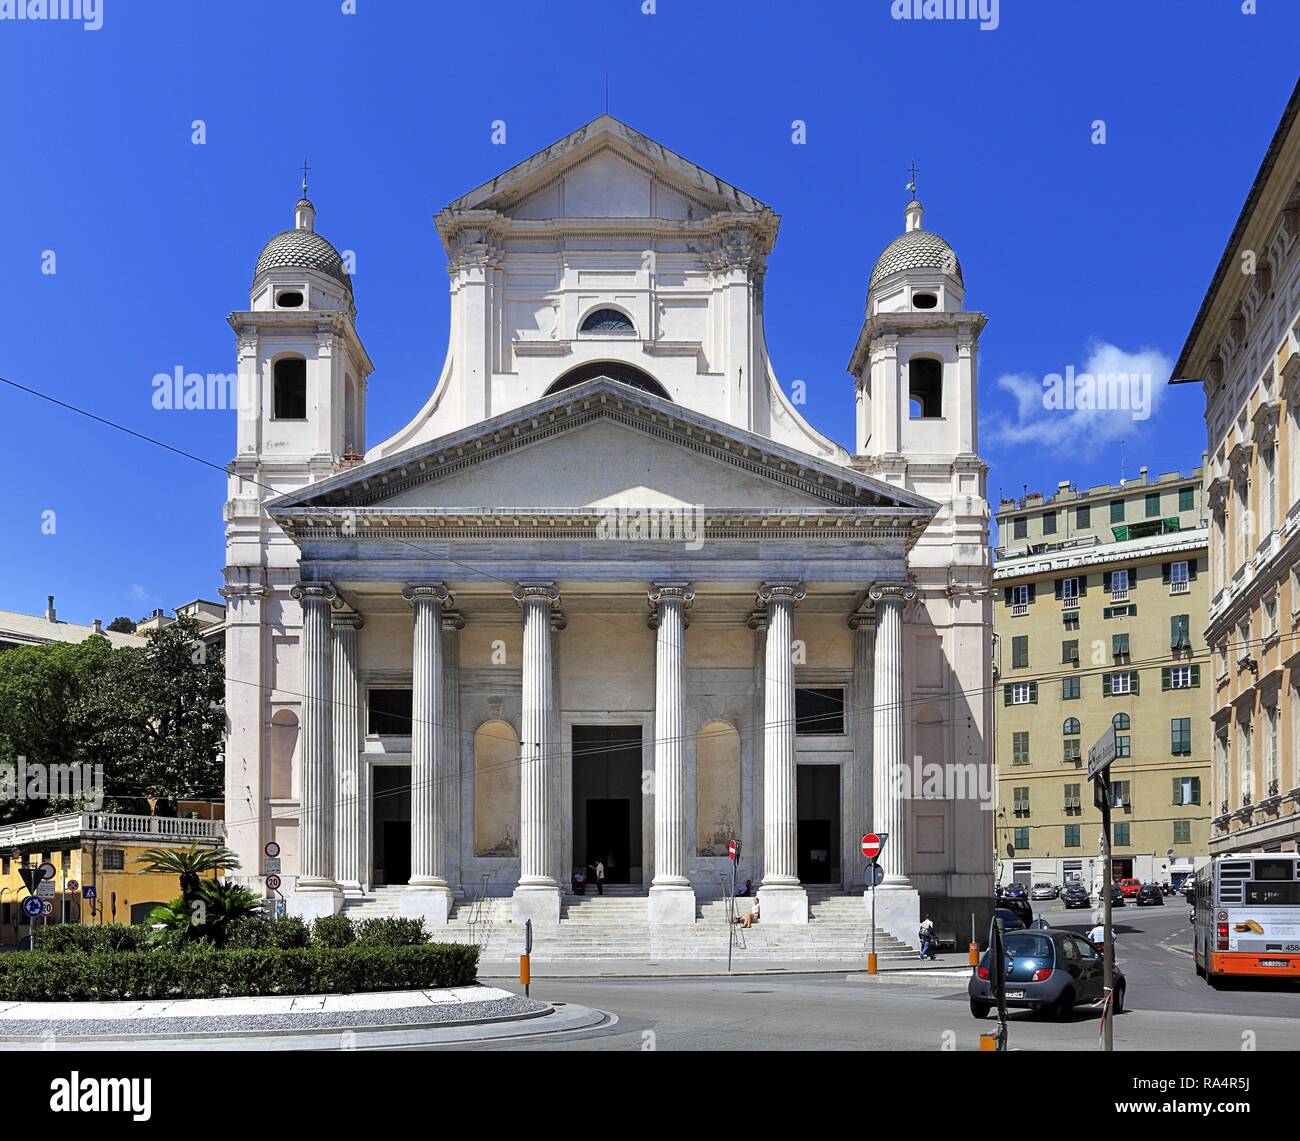 Wlochy - Ligurie - Gênes - Najswietszego Sakramentu Bazylika - Basilica della Santissima Annunziata del Vastato przy Piazza della Nunziata Italie - Ligurie - Gênes - Basilica della Santissima Annunzia Banque D'Images